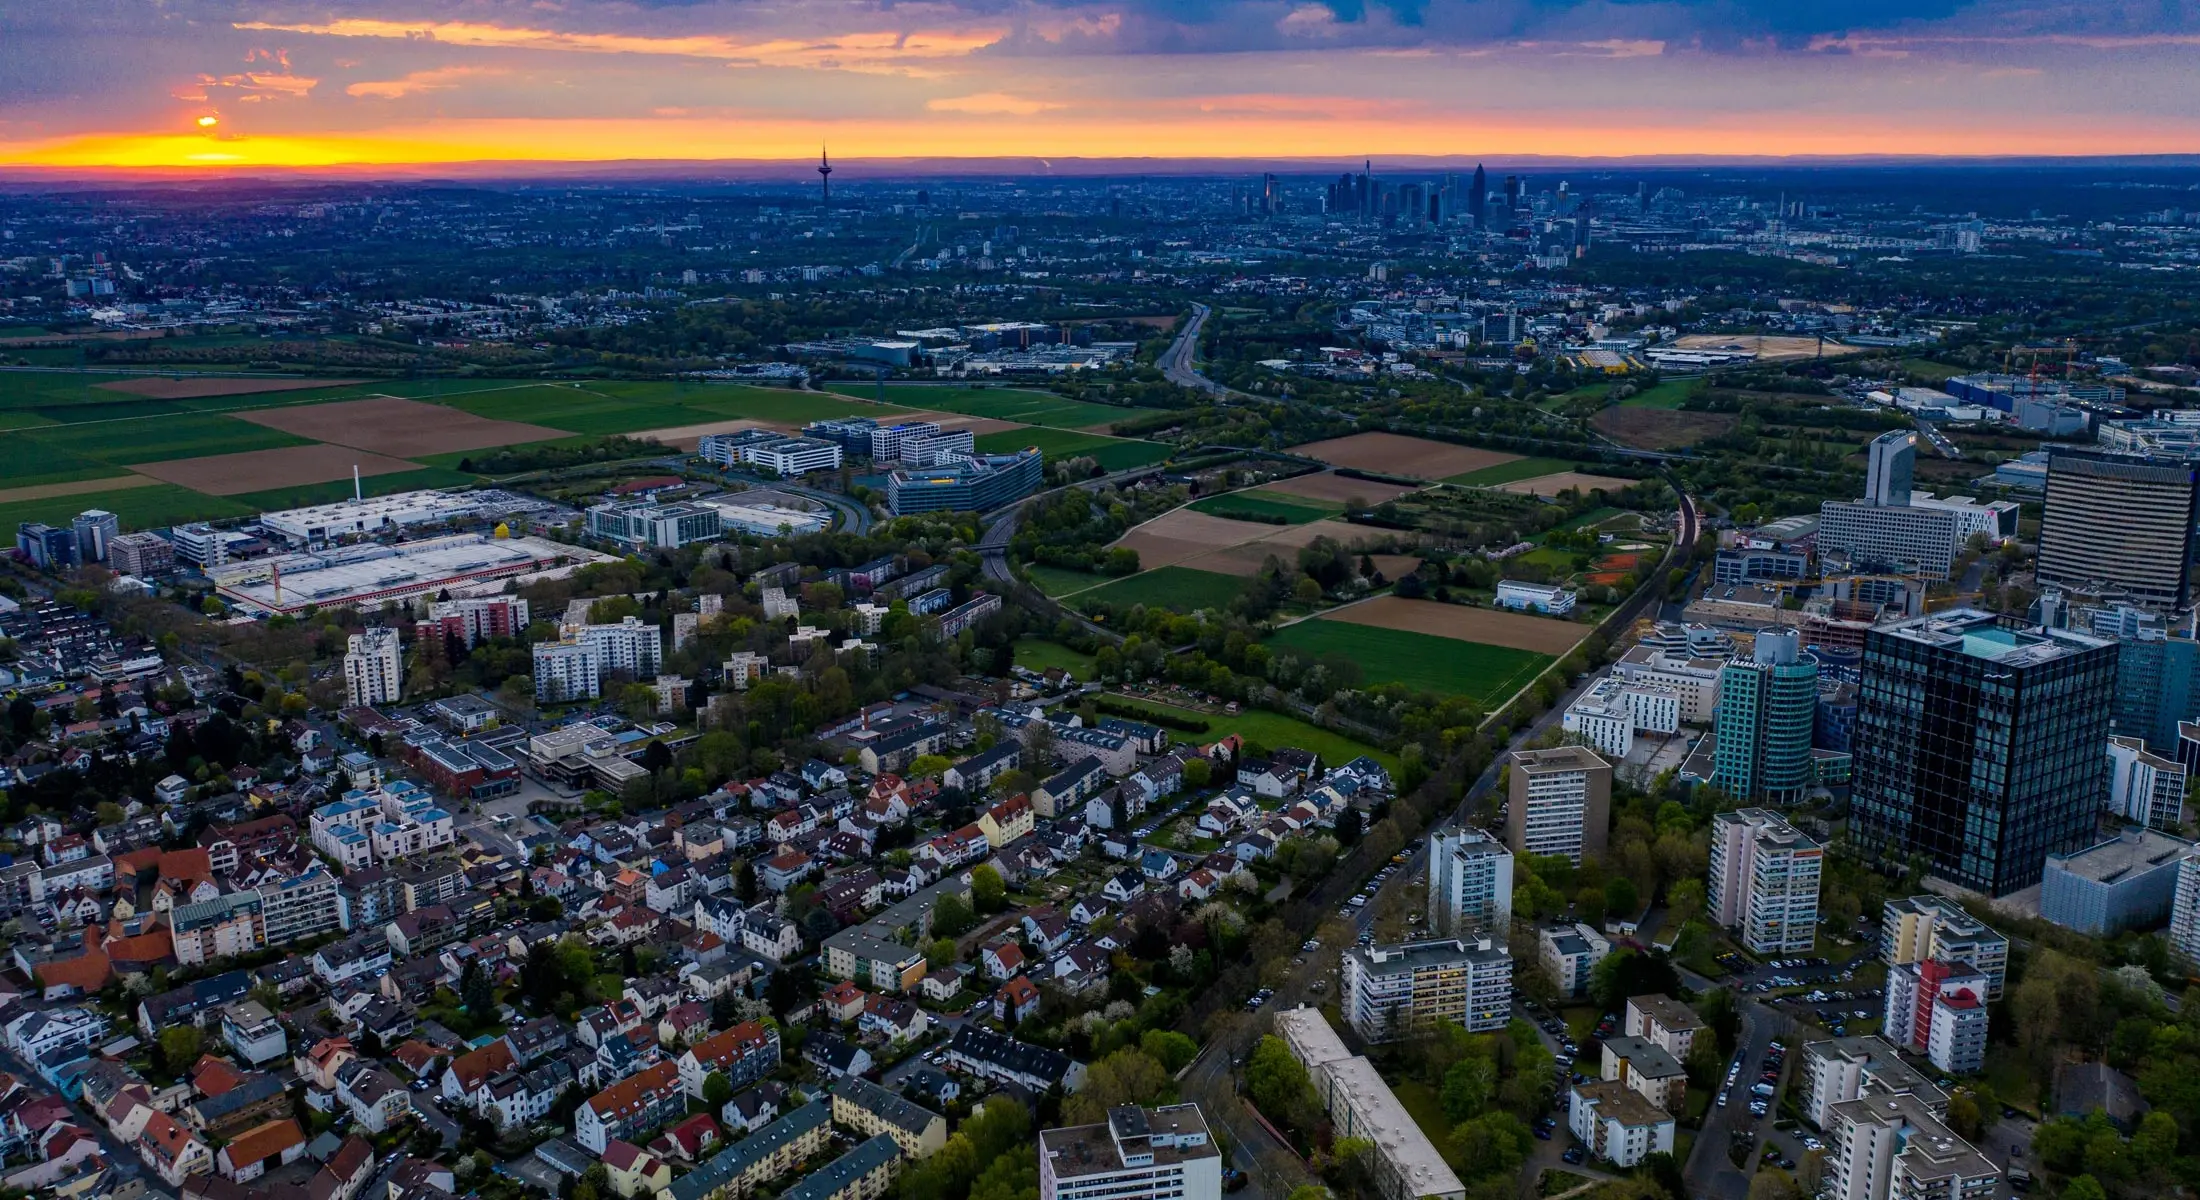 Luftbild von Eschborn bei Sonnenaufgang, im Vordergrund Immobilien in Eschborn, im Hintergrund die Skyline von Frankfurt am Main